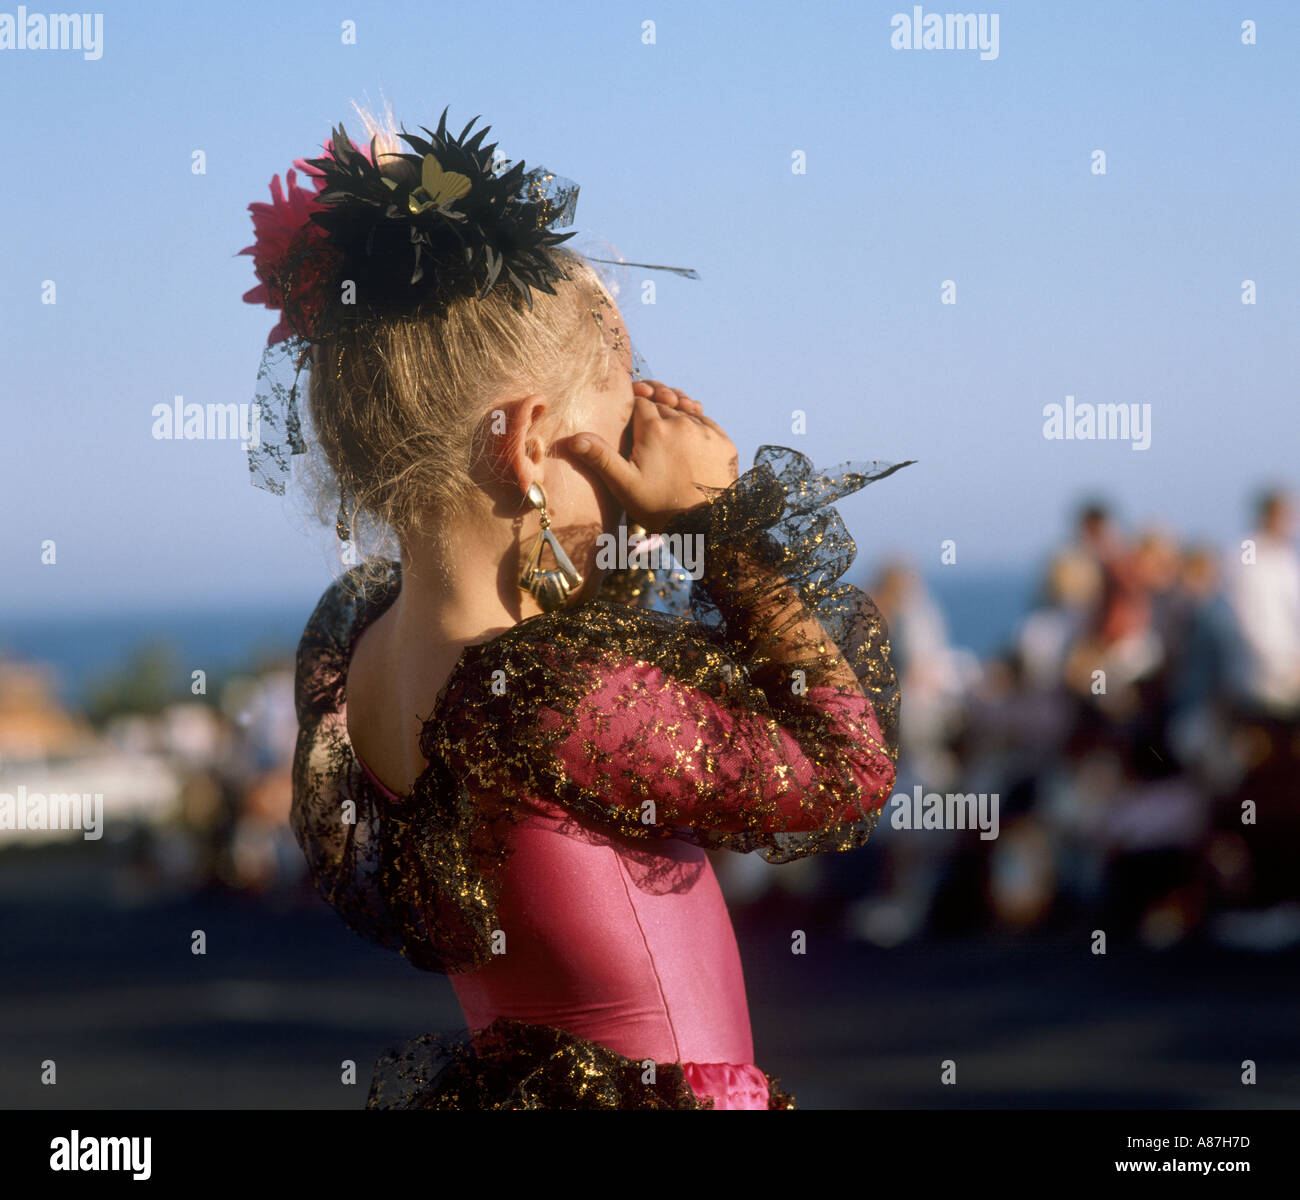 Petite fille habillé pour le carnaval, Puerto del Carmen, Lanzarote, îles Canaries, Espagne Banque D'Images